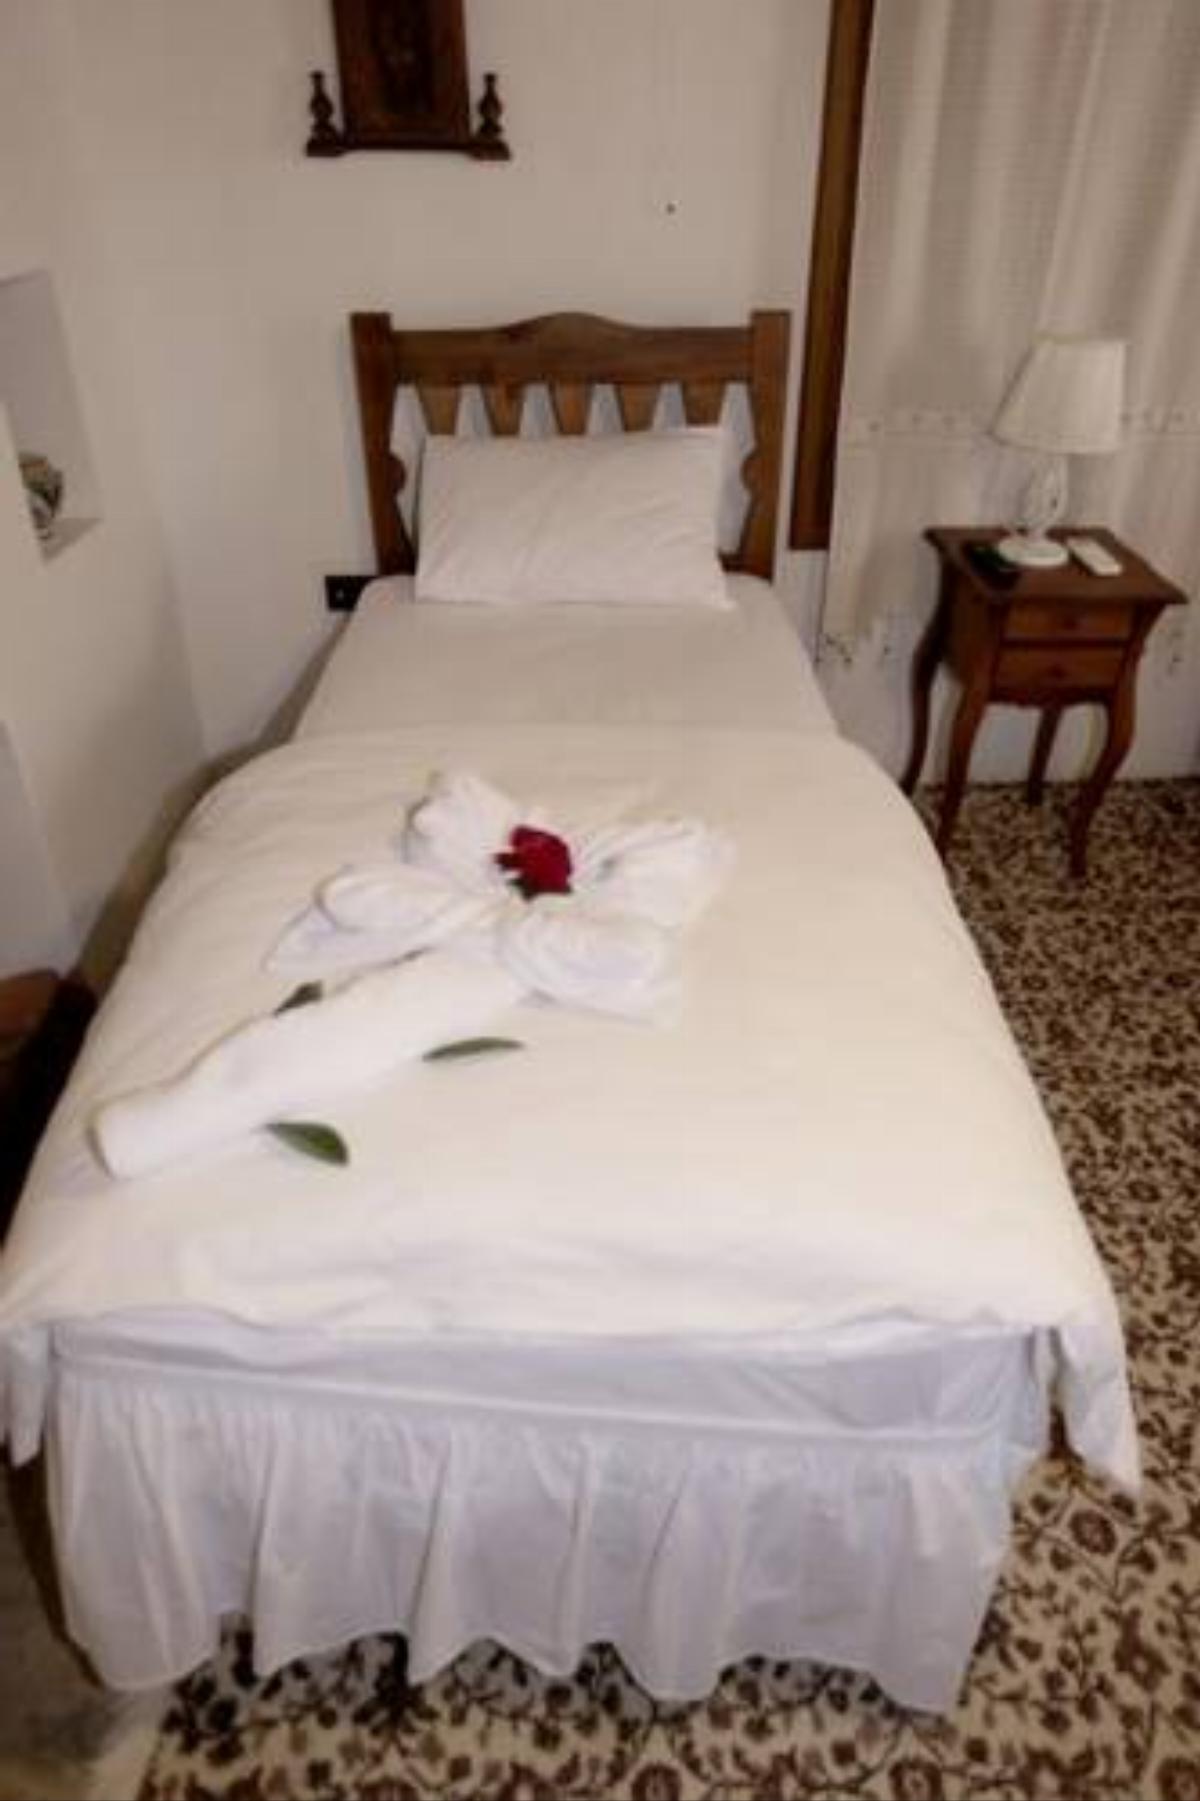 Kadılar Paşazade Konağı Butik Otel Hotel Birgi Turkey